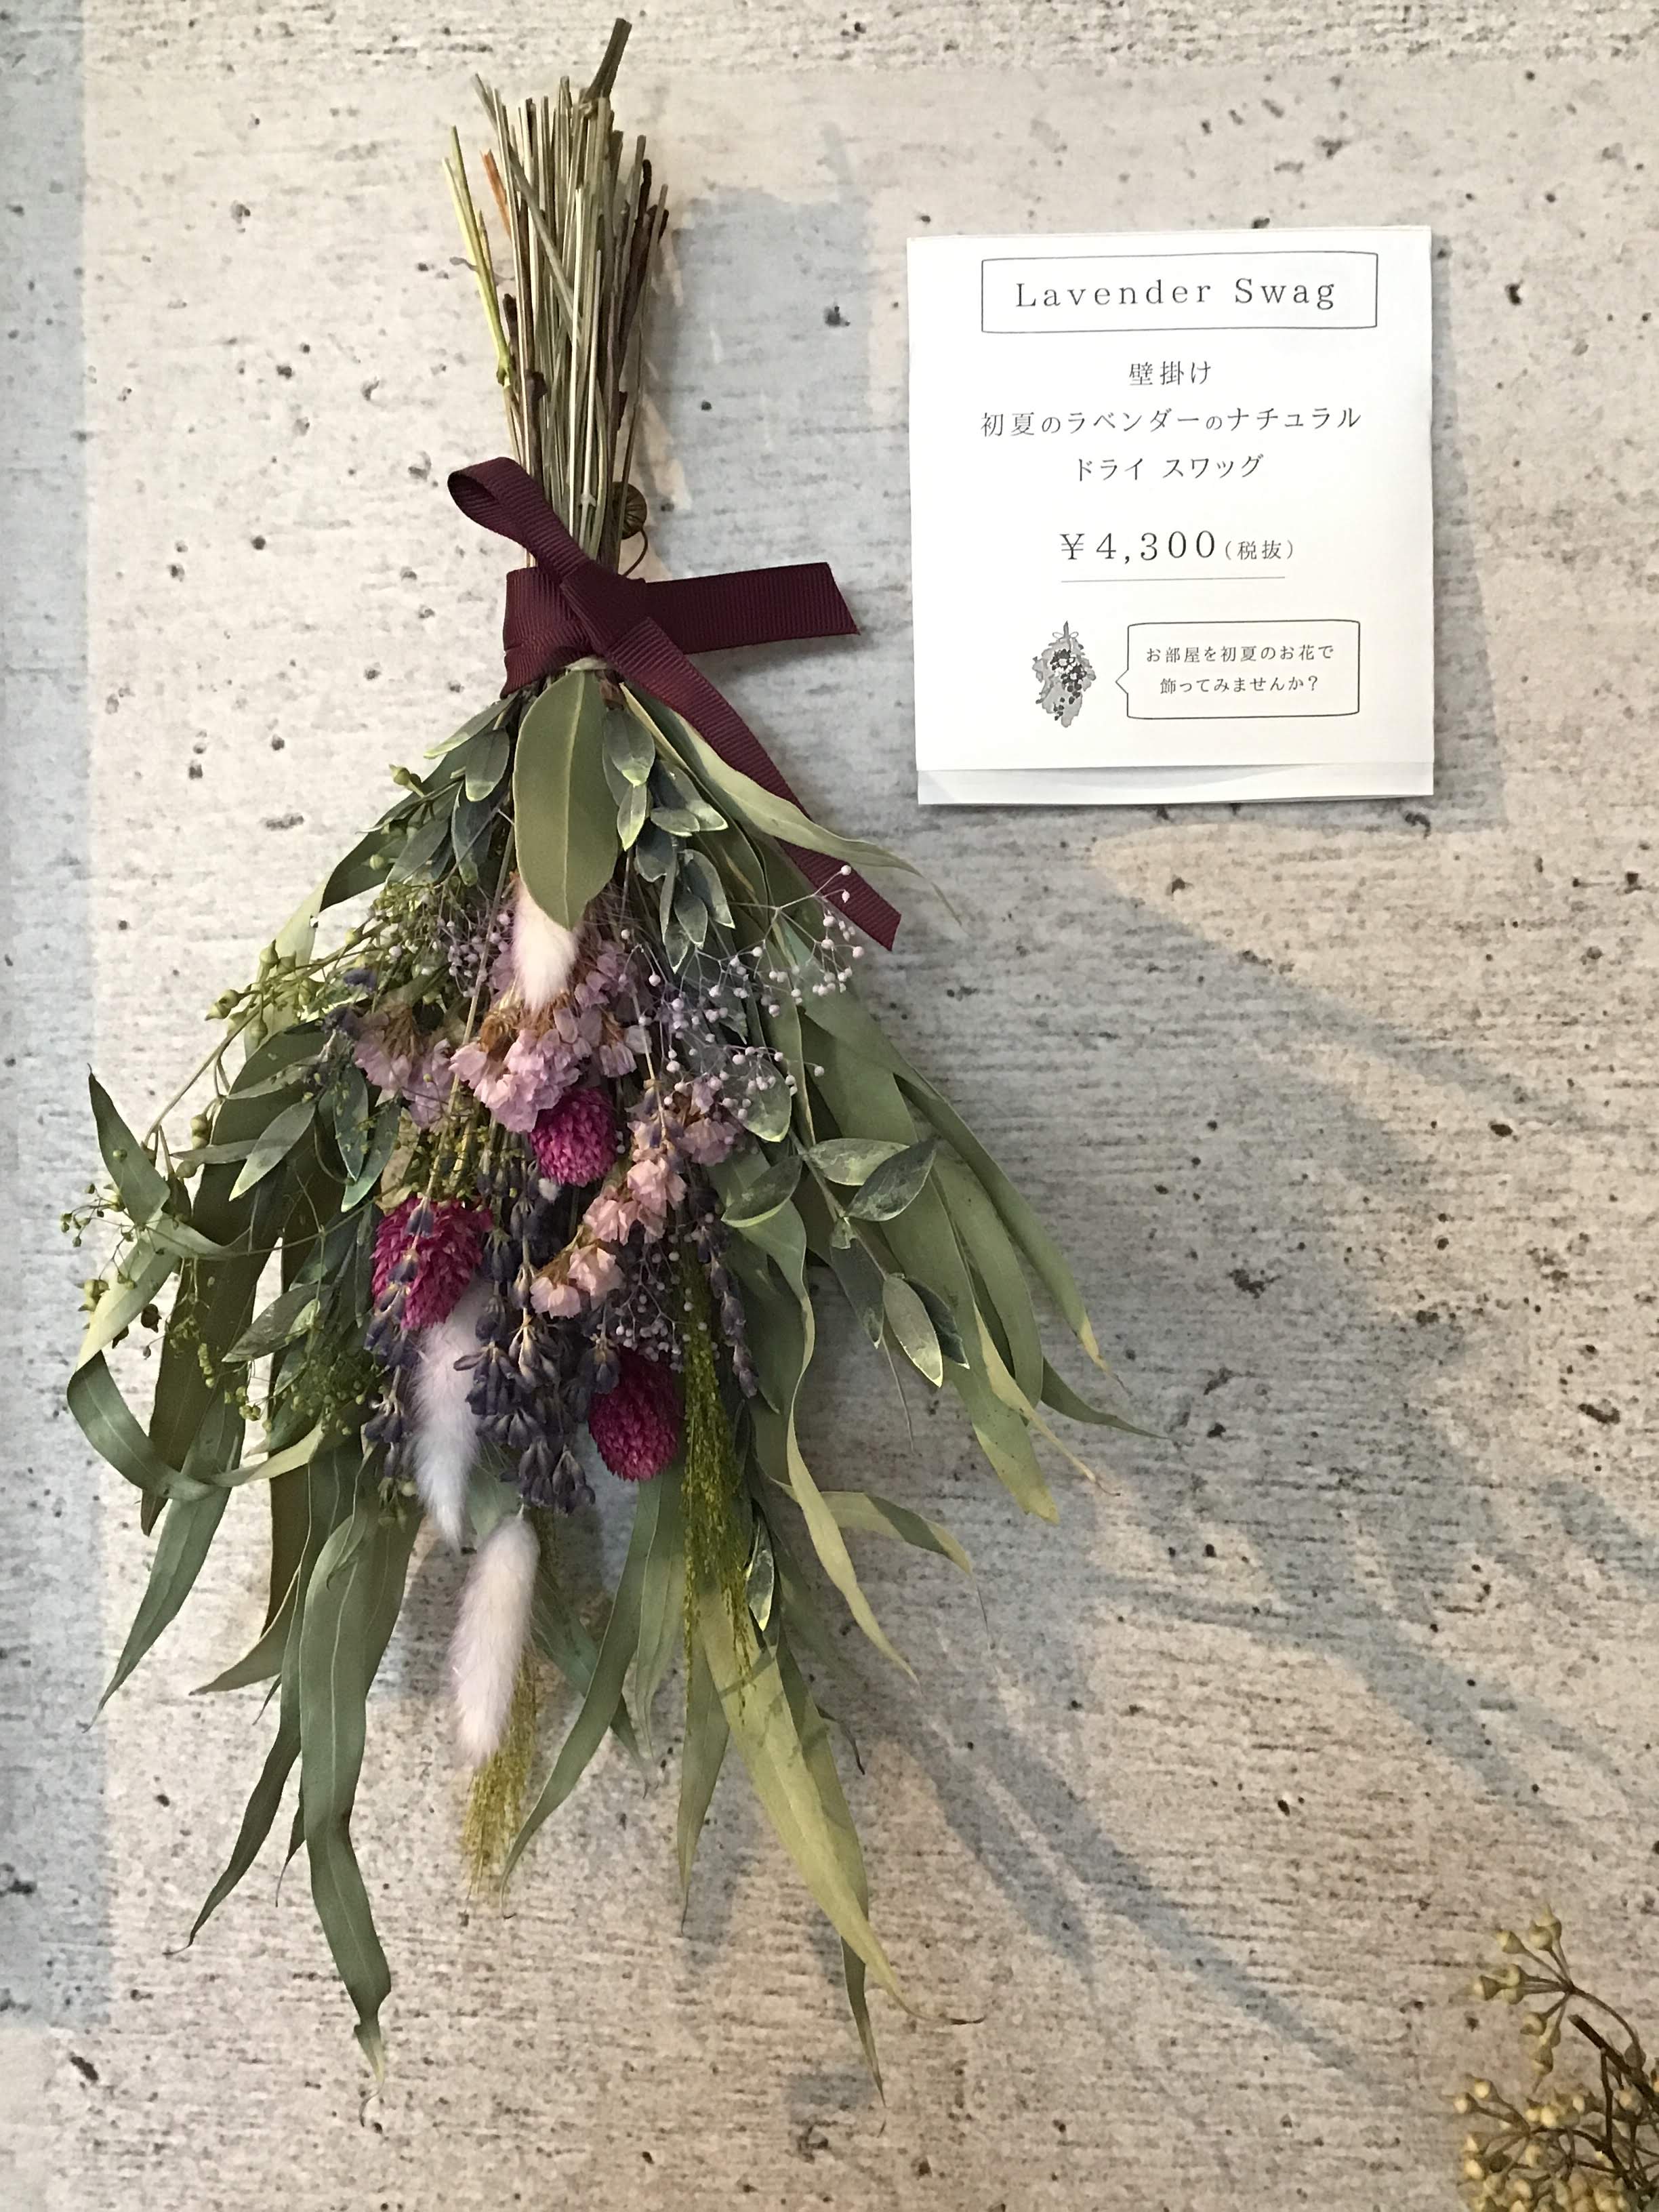 5月 ワークショップ ラベンダーのスワッグ Ylangylang 花のアトリエ イランイラン 京都 下鴨神社すぐそばのカフェ ドライ アーティフィシャル プリザーブドフラワーショップ